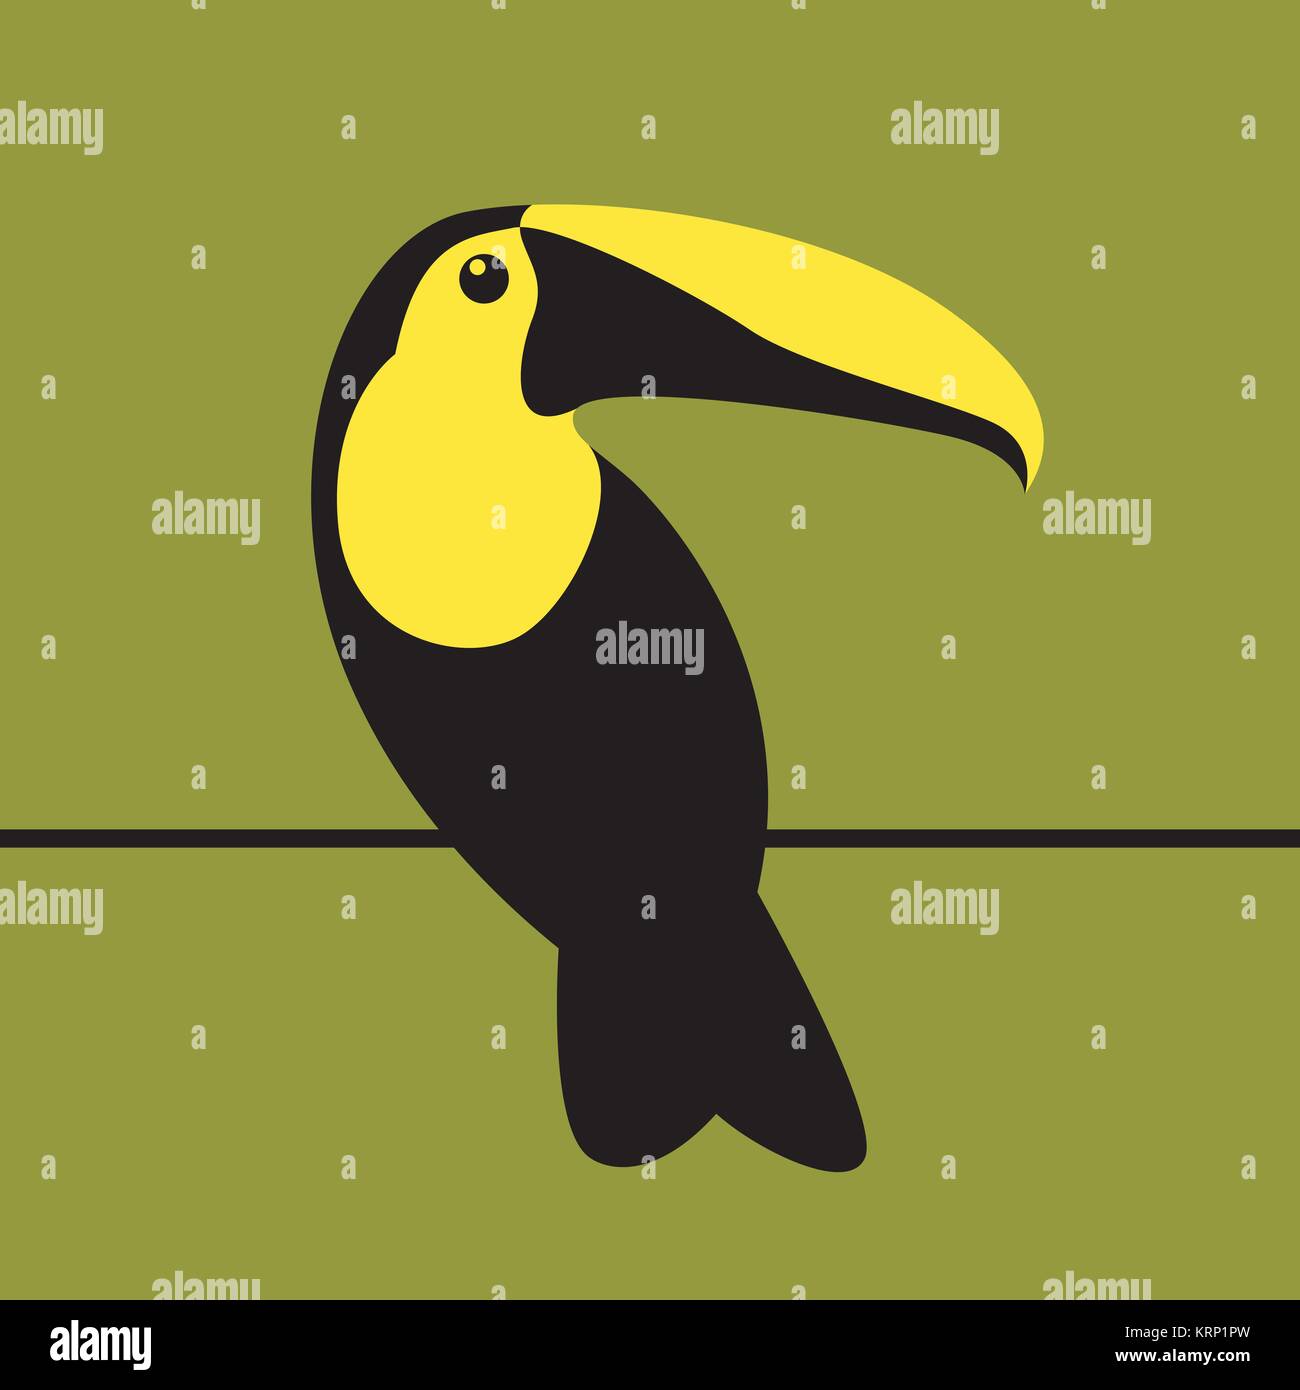 Toucan vogel Vektor-illustration Flat Style Profil ansehen Stock Vektor